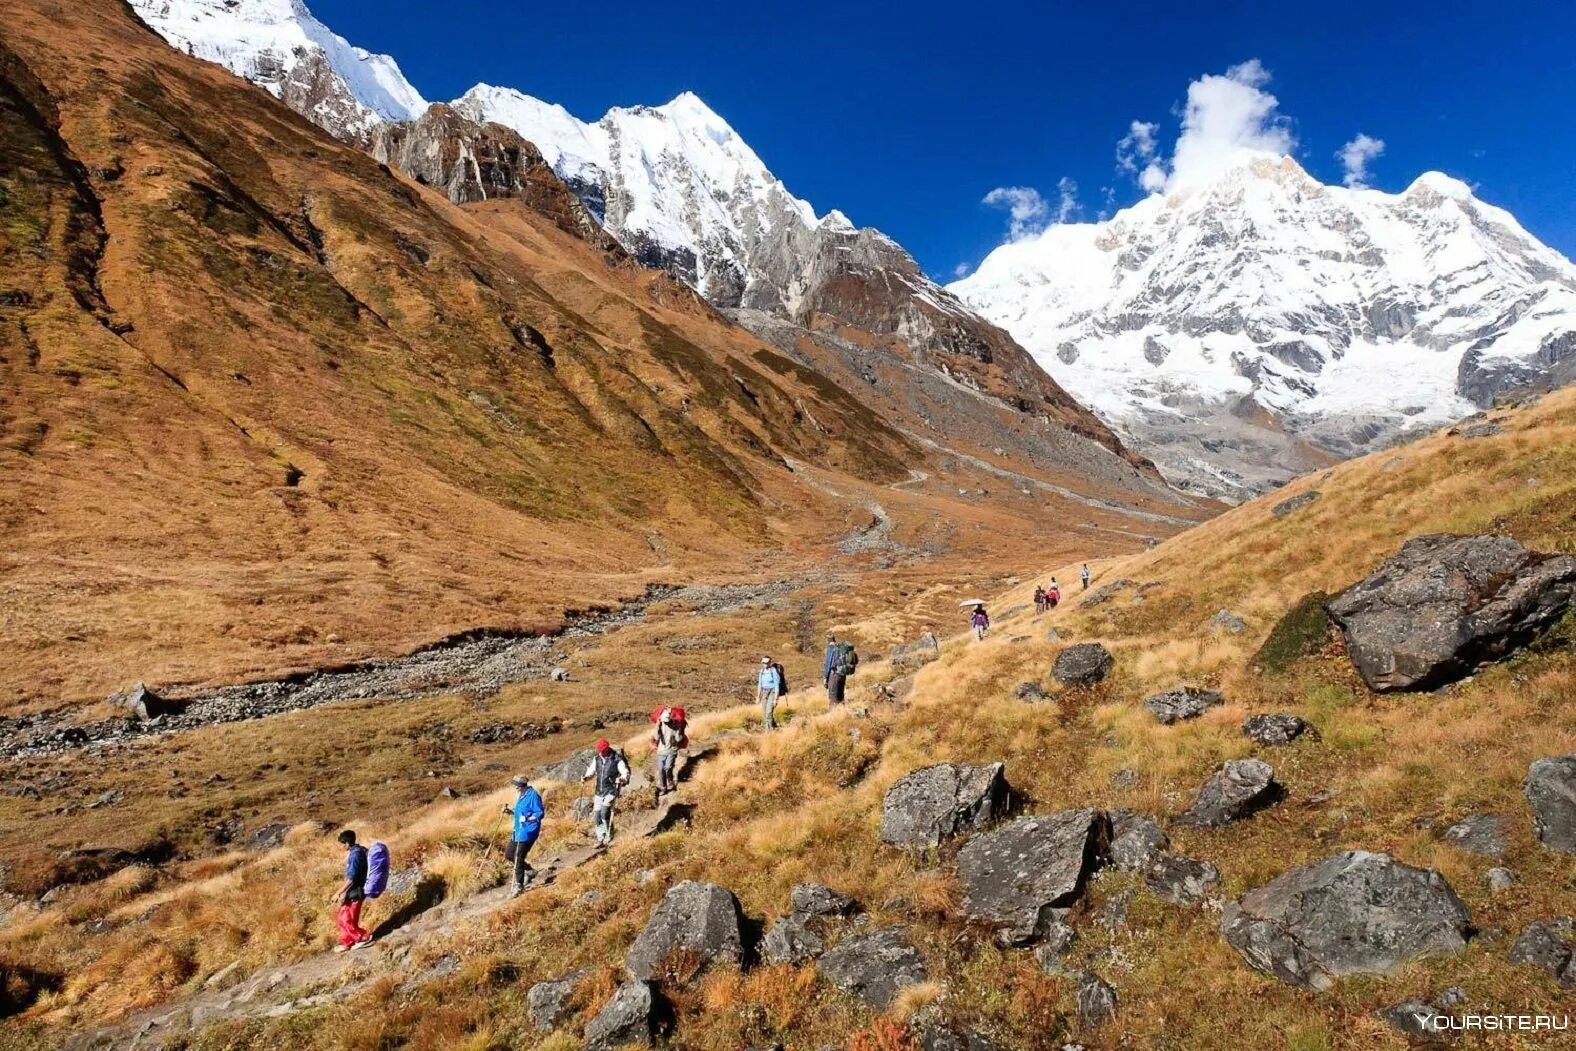 Реки берущие начало в гималаях. Долина Катманду Гималаи. Тибет Эверест Гималаи. Непал Гималаи Аннапурна. Национальный парк Аннапурны.